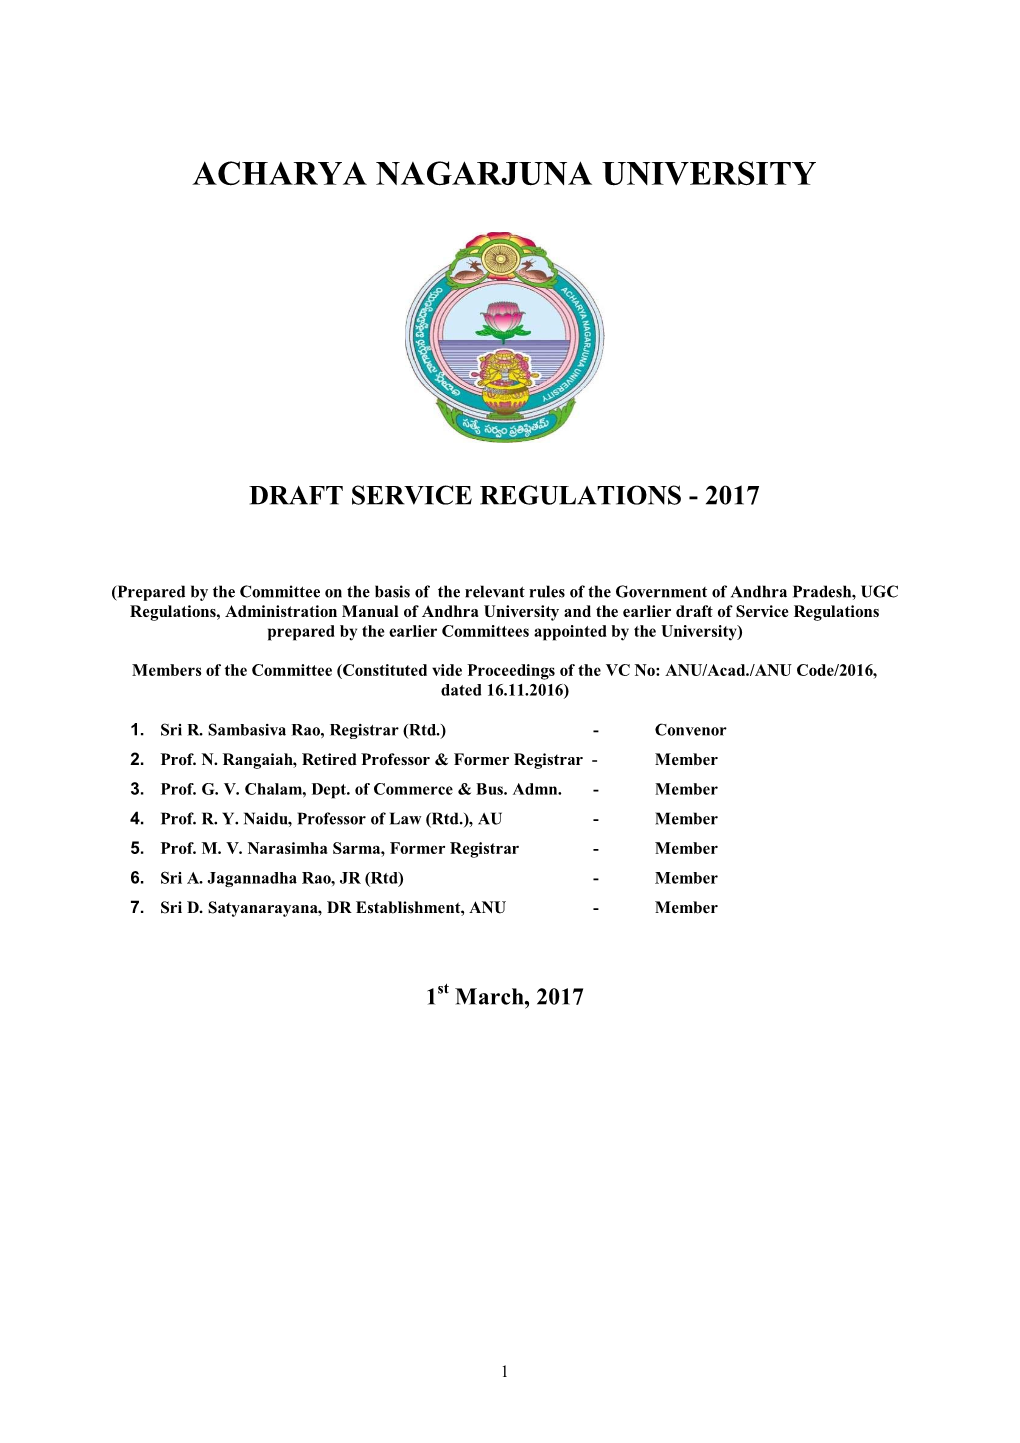 Acharya Nagarjuna University Draft Service Regulations